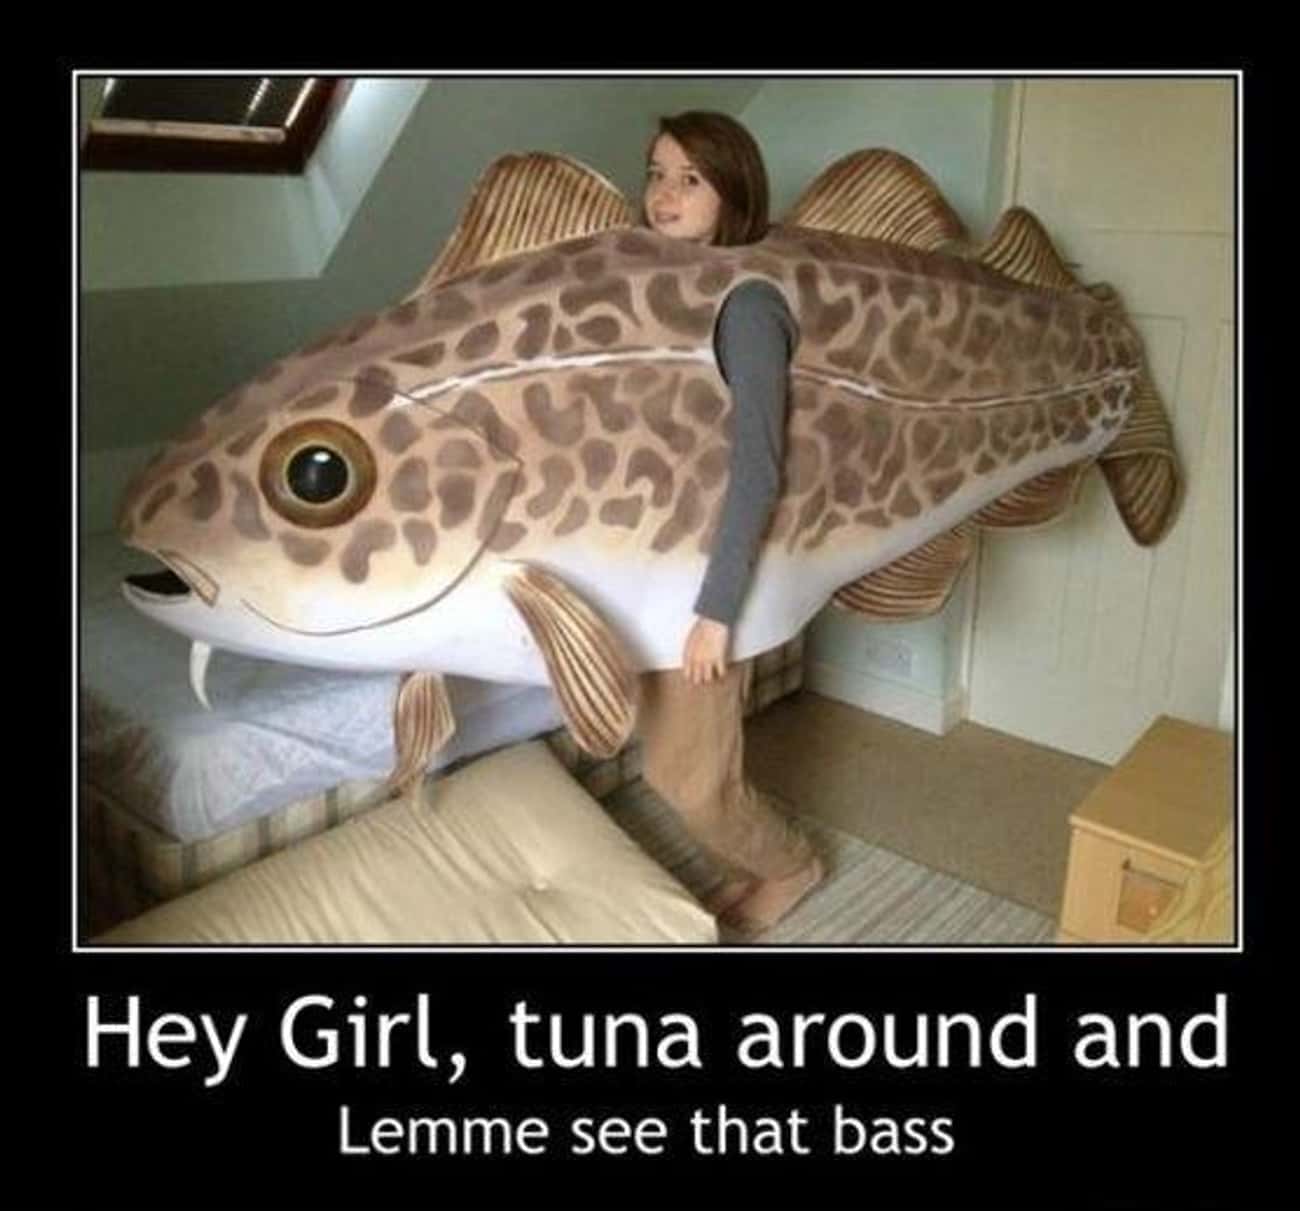 Dat Bass